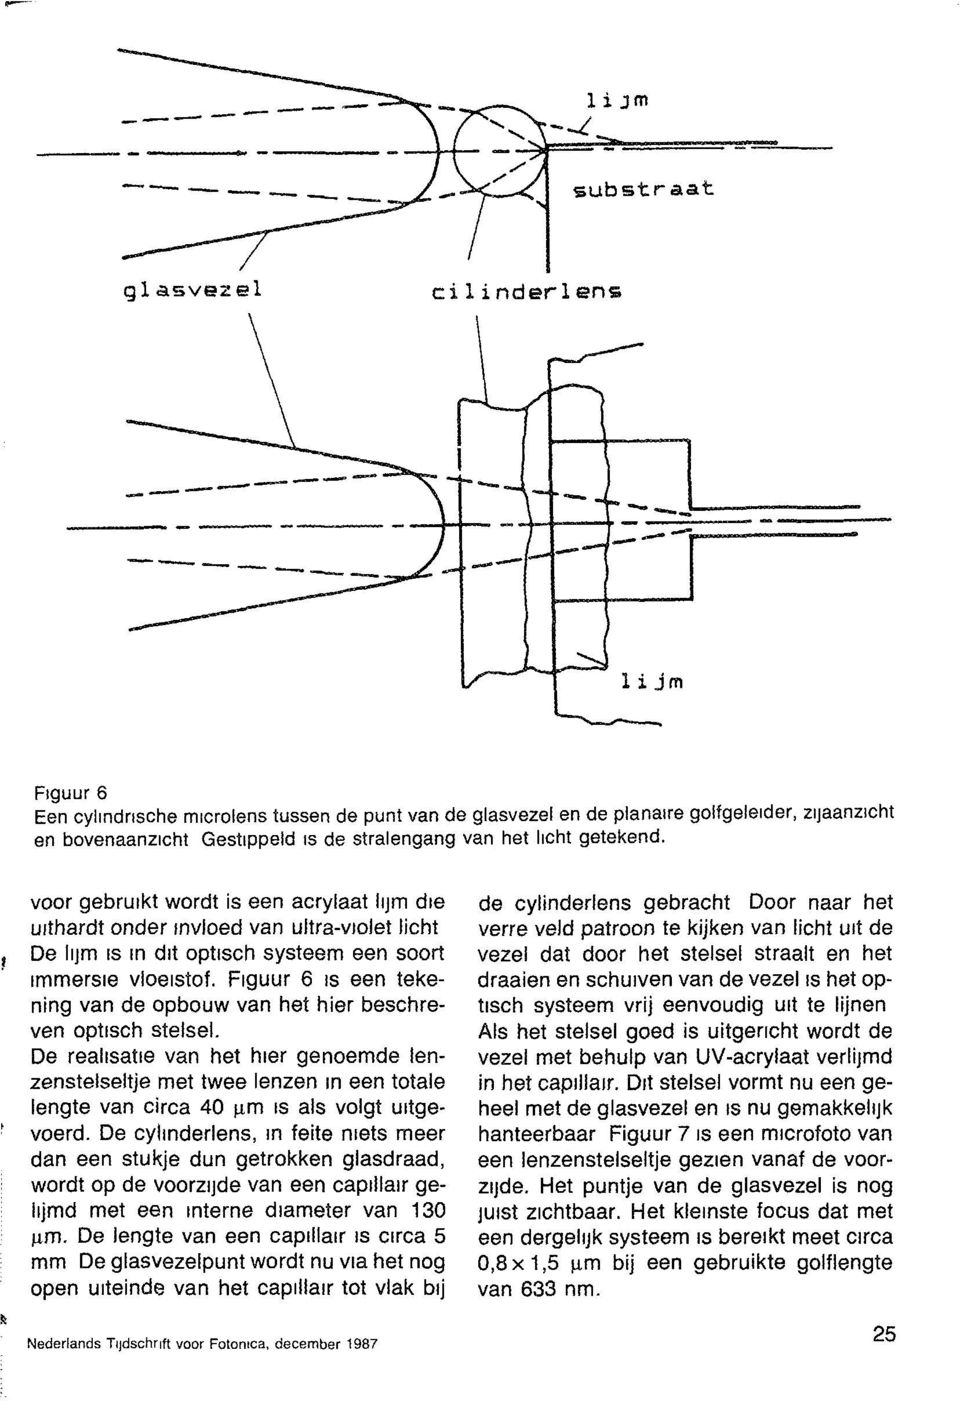 Figuur 6 is een tekening van de opbouw van het hier beschreven optisch stelsel.